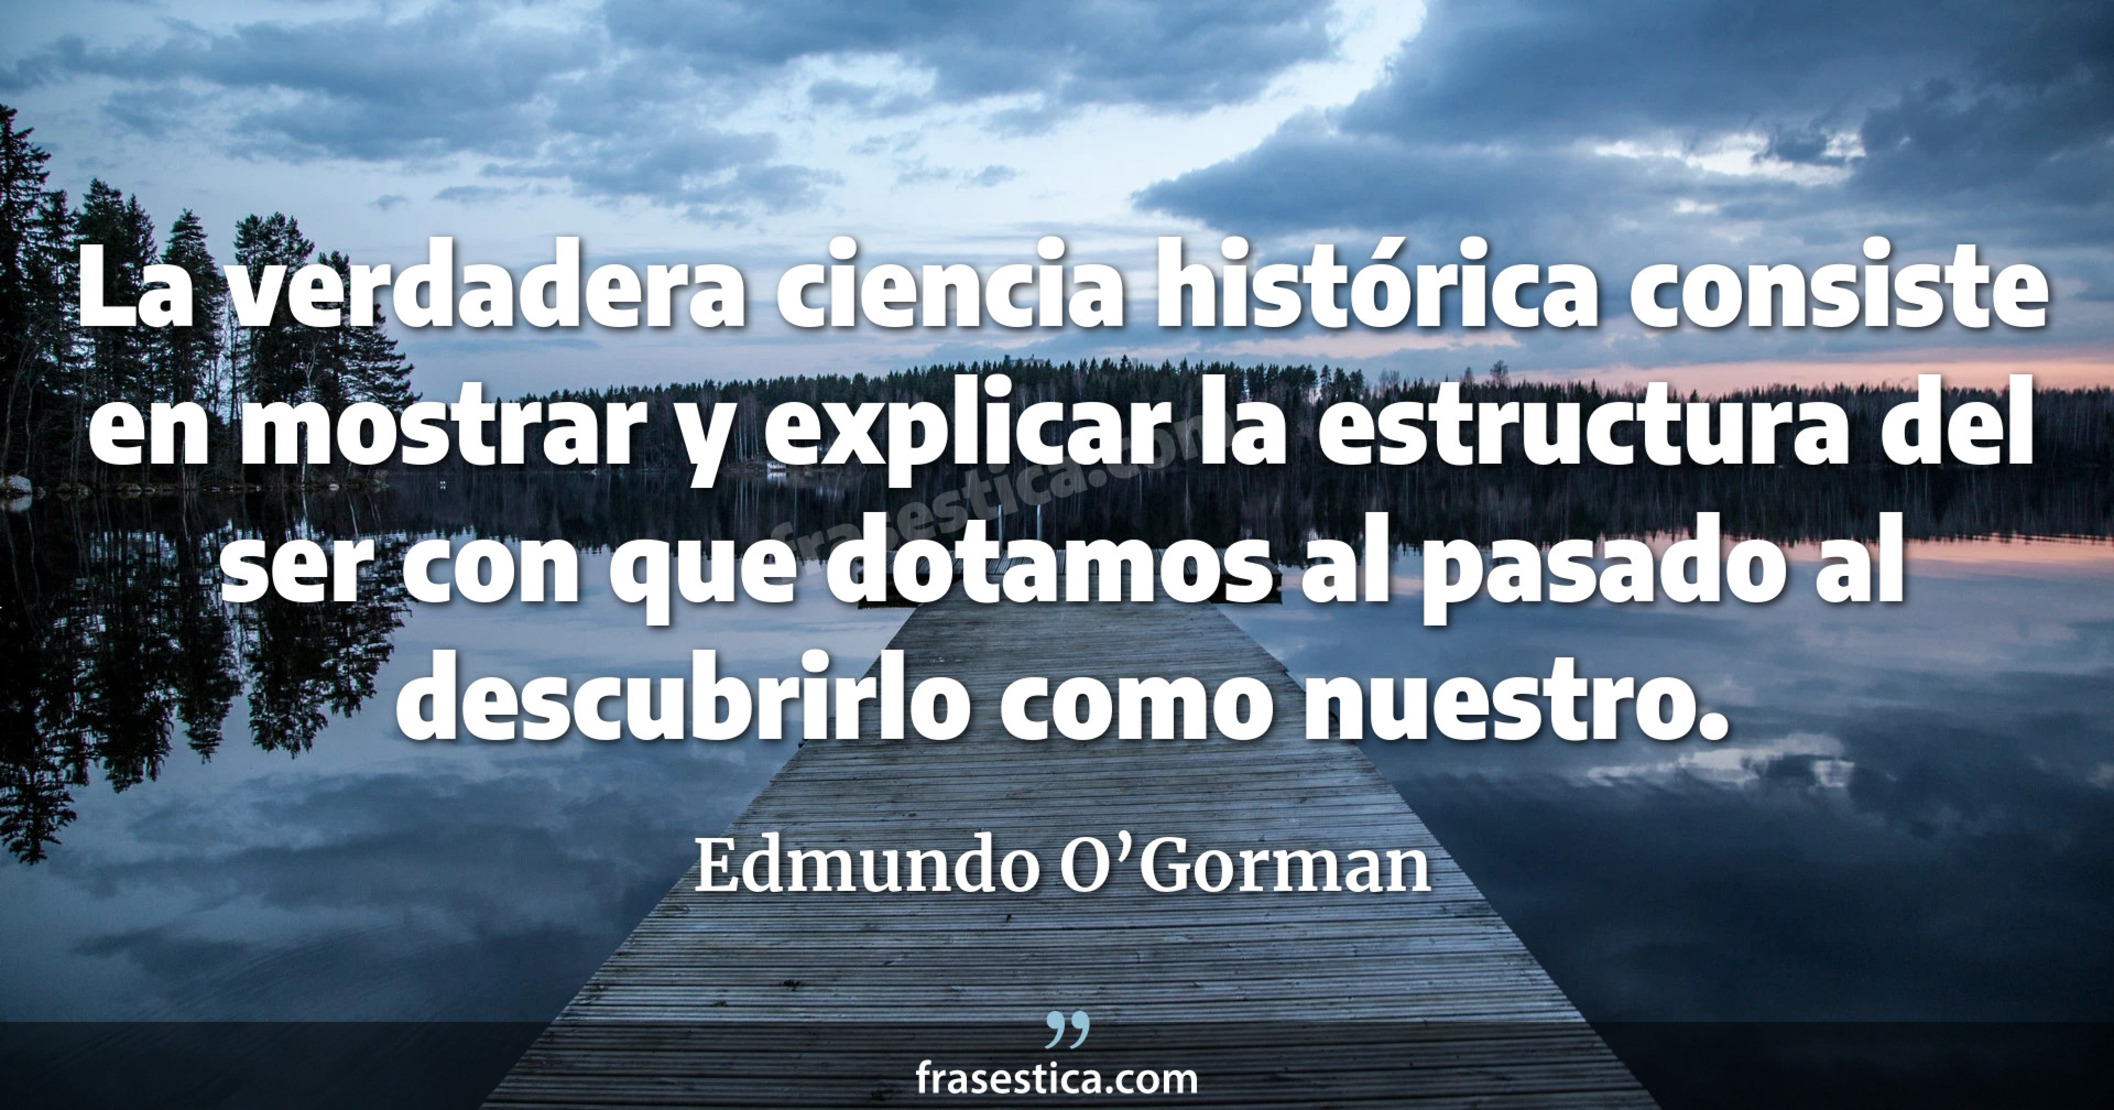 La verdadera ciencia histórica consiste en mostrar y explicar la estructura del ser con que dotamos al pasado al descubrirlo como nuestro. - Edmundo O’Gorman